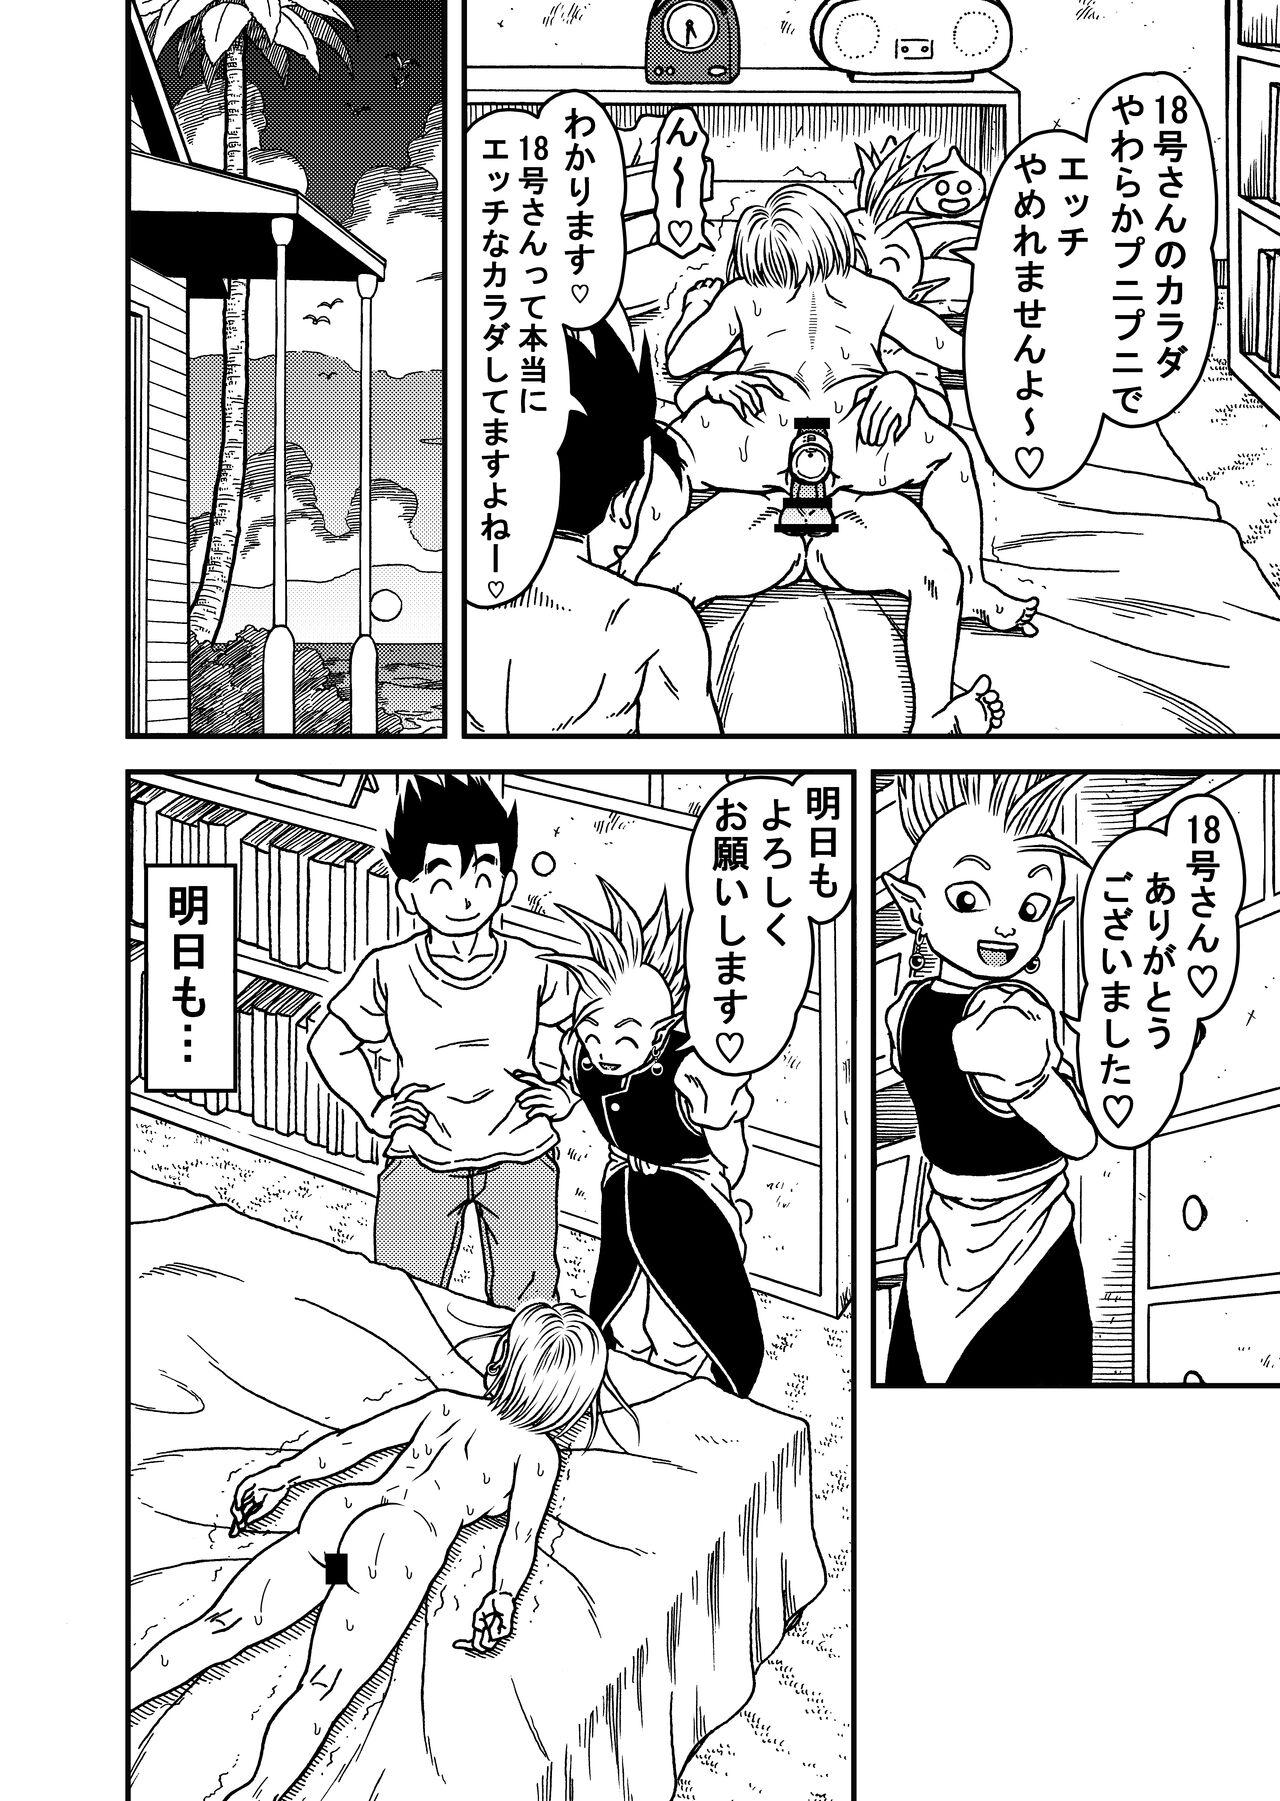 Chunky 18-gou NTR Nakadashi on Parade 5 - Dragon ball z Gay Medic - Page 38